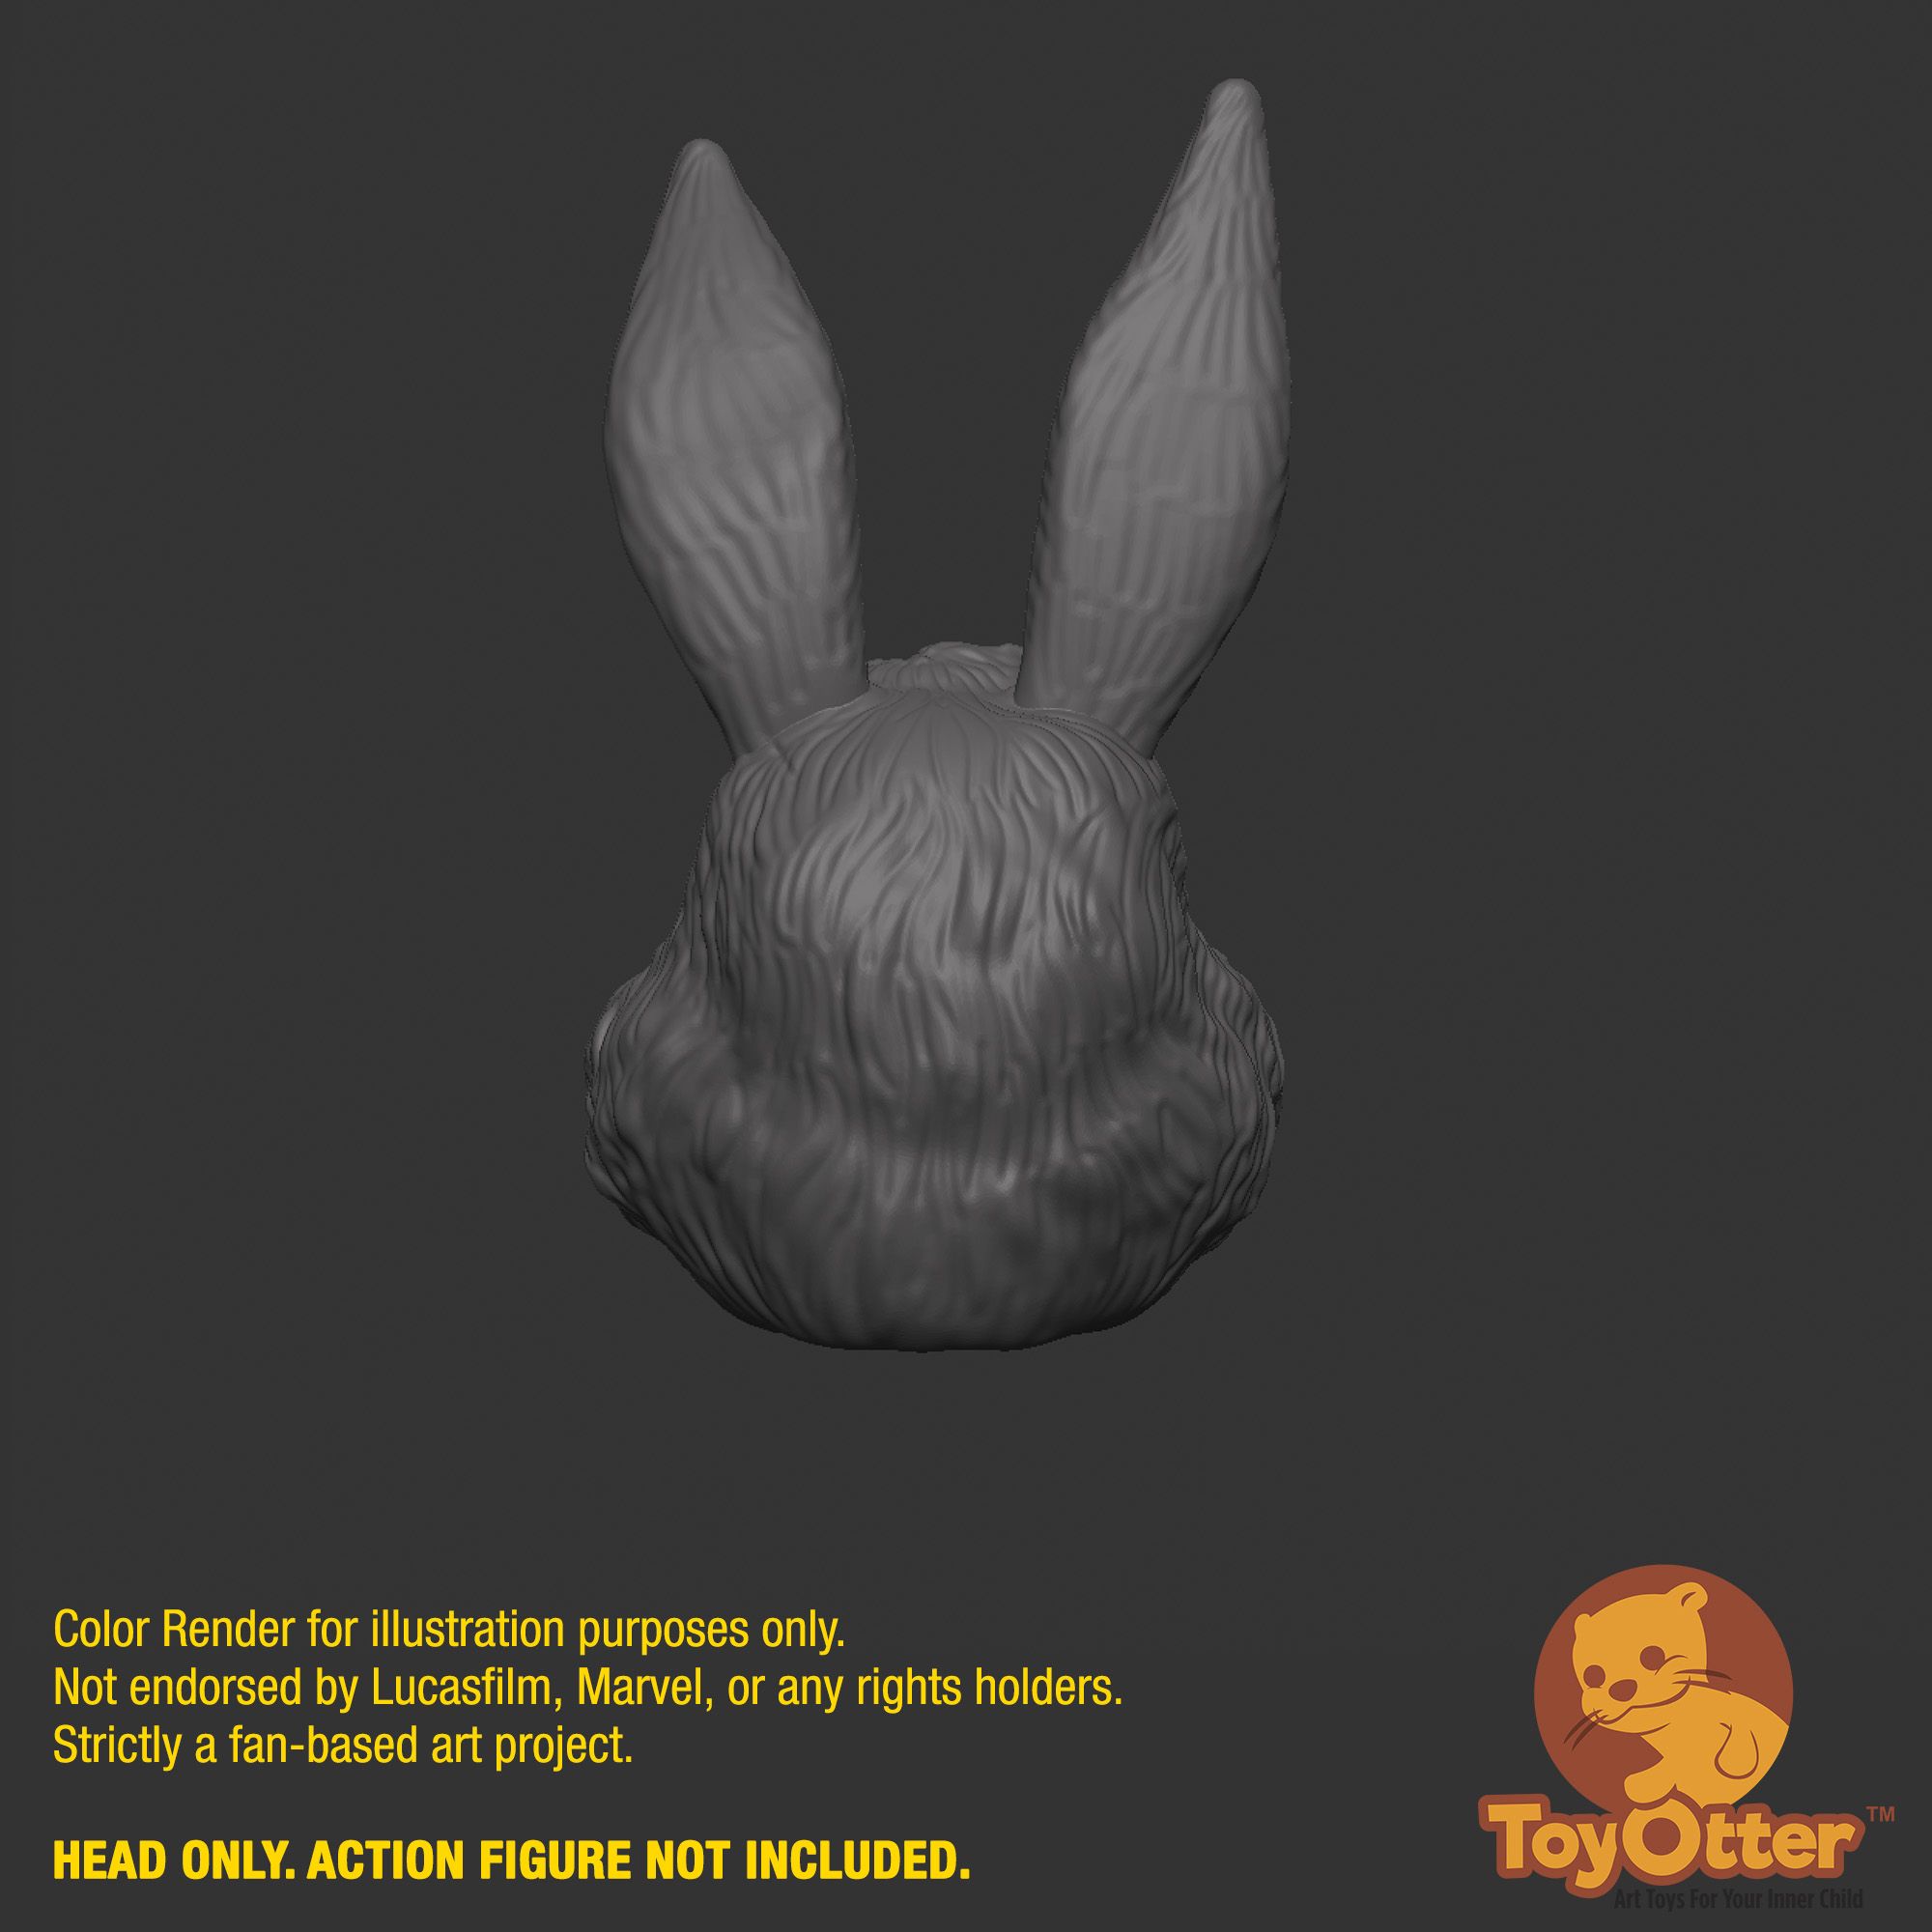 Jaxxon_SWB_Head_6.jpg 3D file Jaxxon Rabbit Head for Star Wars action figure・Model to download and 3D print, ToyOtter